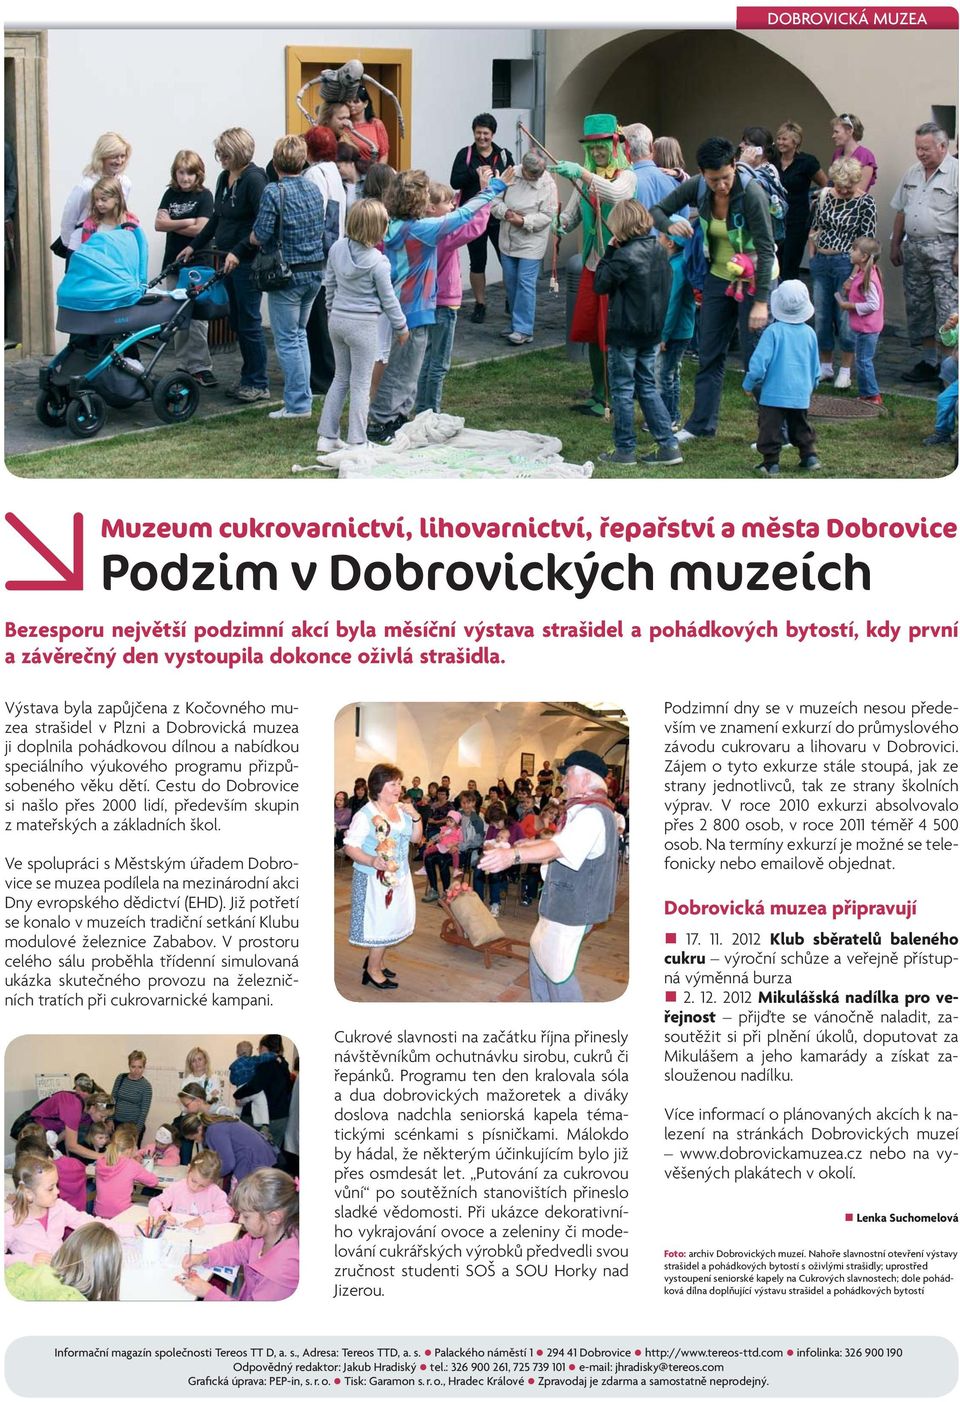 Výstava byla zapůjčena z Kočovného muzea strašidel v Plzni a Dobrovická muzea ji doplnila pohádkovou dílnou a nabídkou speciálního výukového programu přizpůsobeného věku dětí.